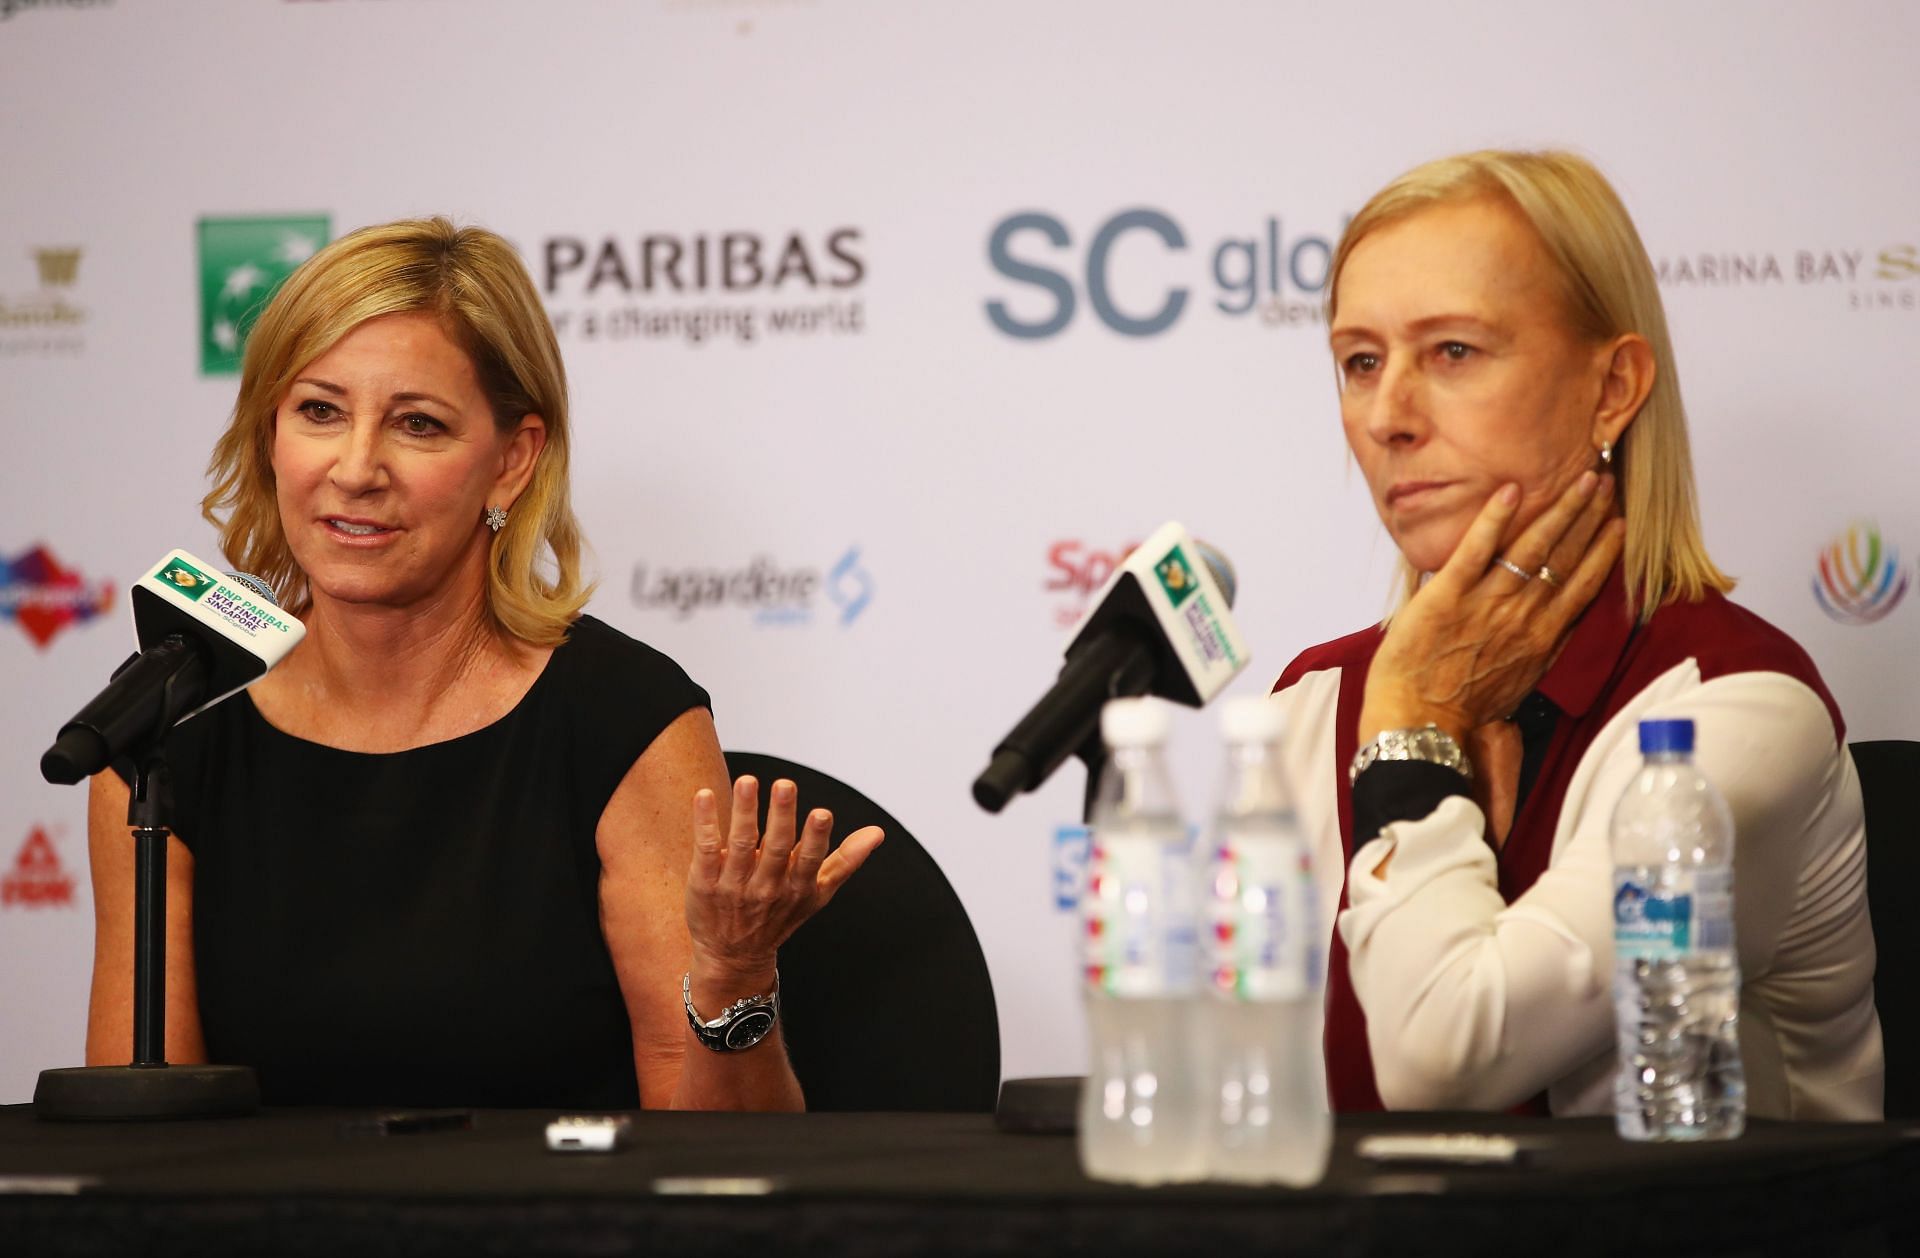 Chris Evert and Martina Navratilova at the 2016 BNP Paribas WTA Finals